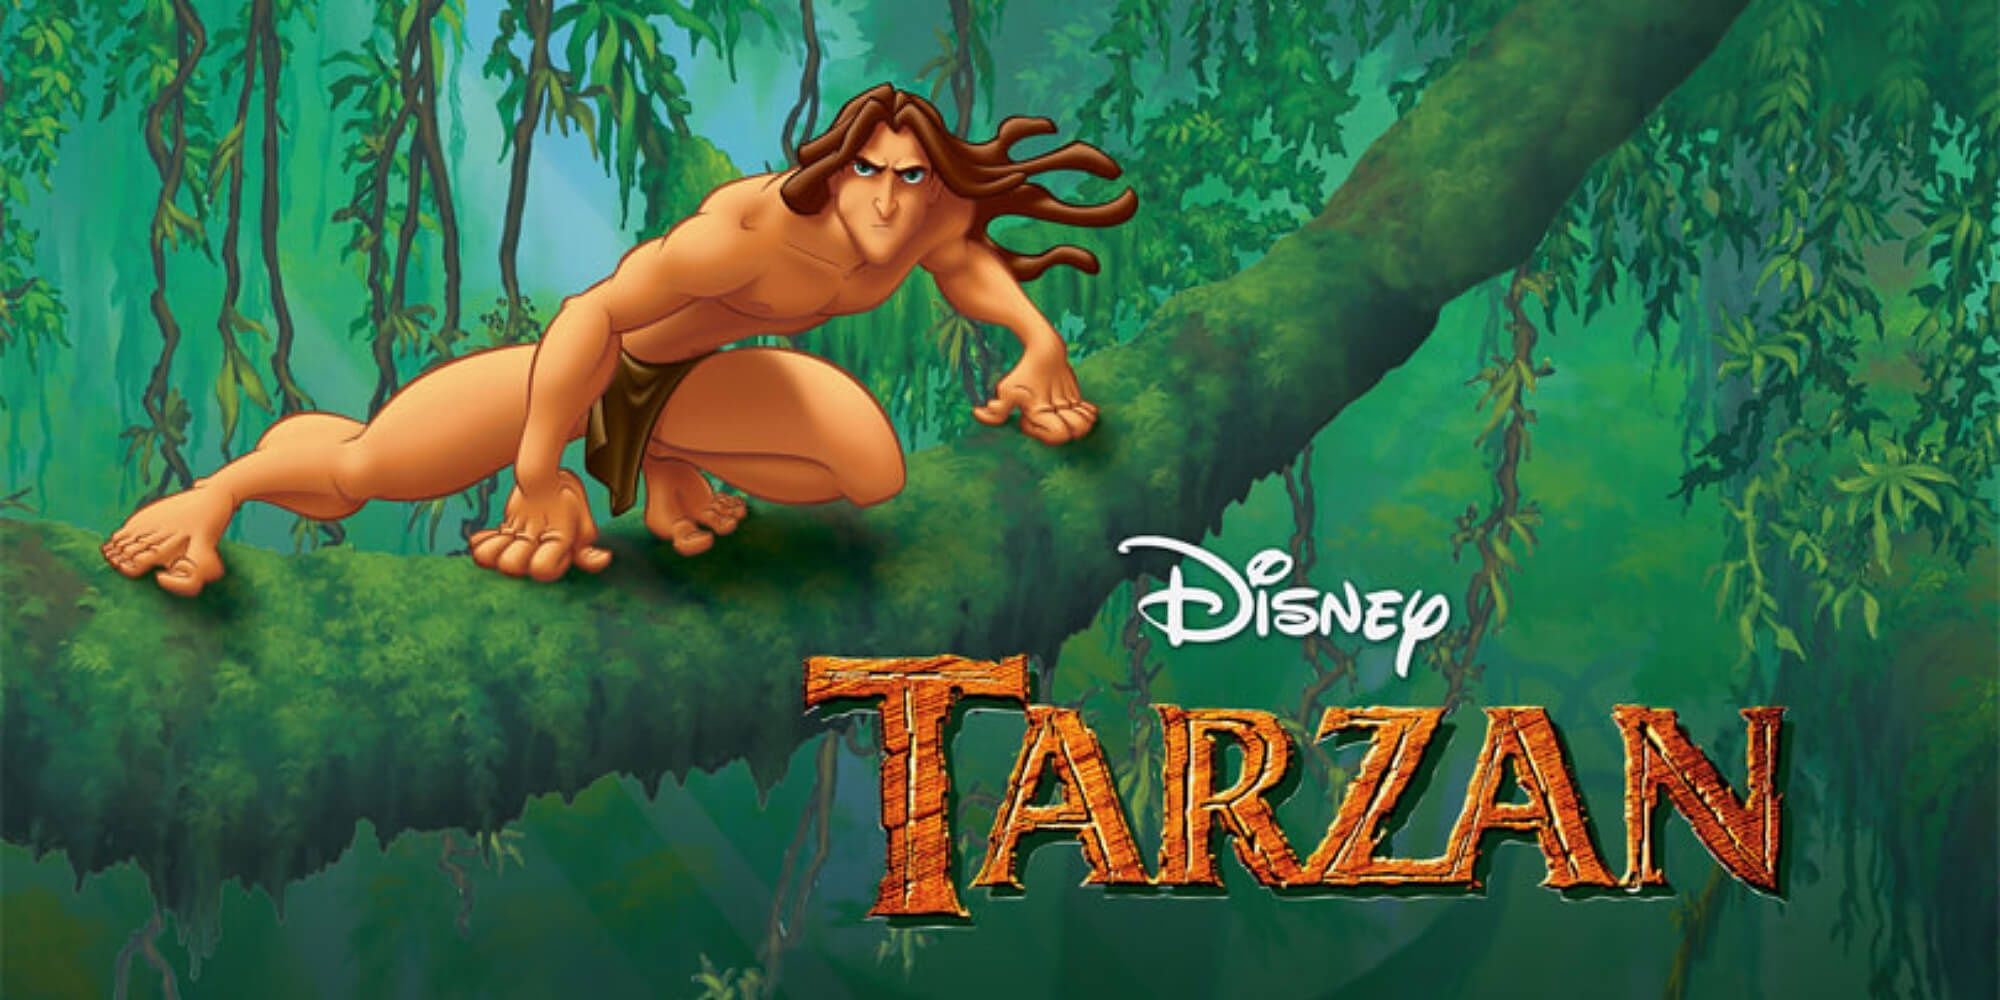 Disney's Tarzan.